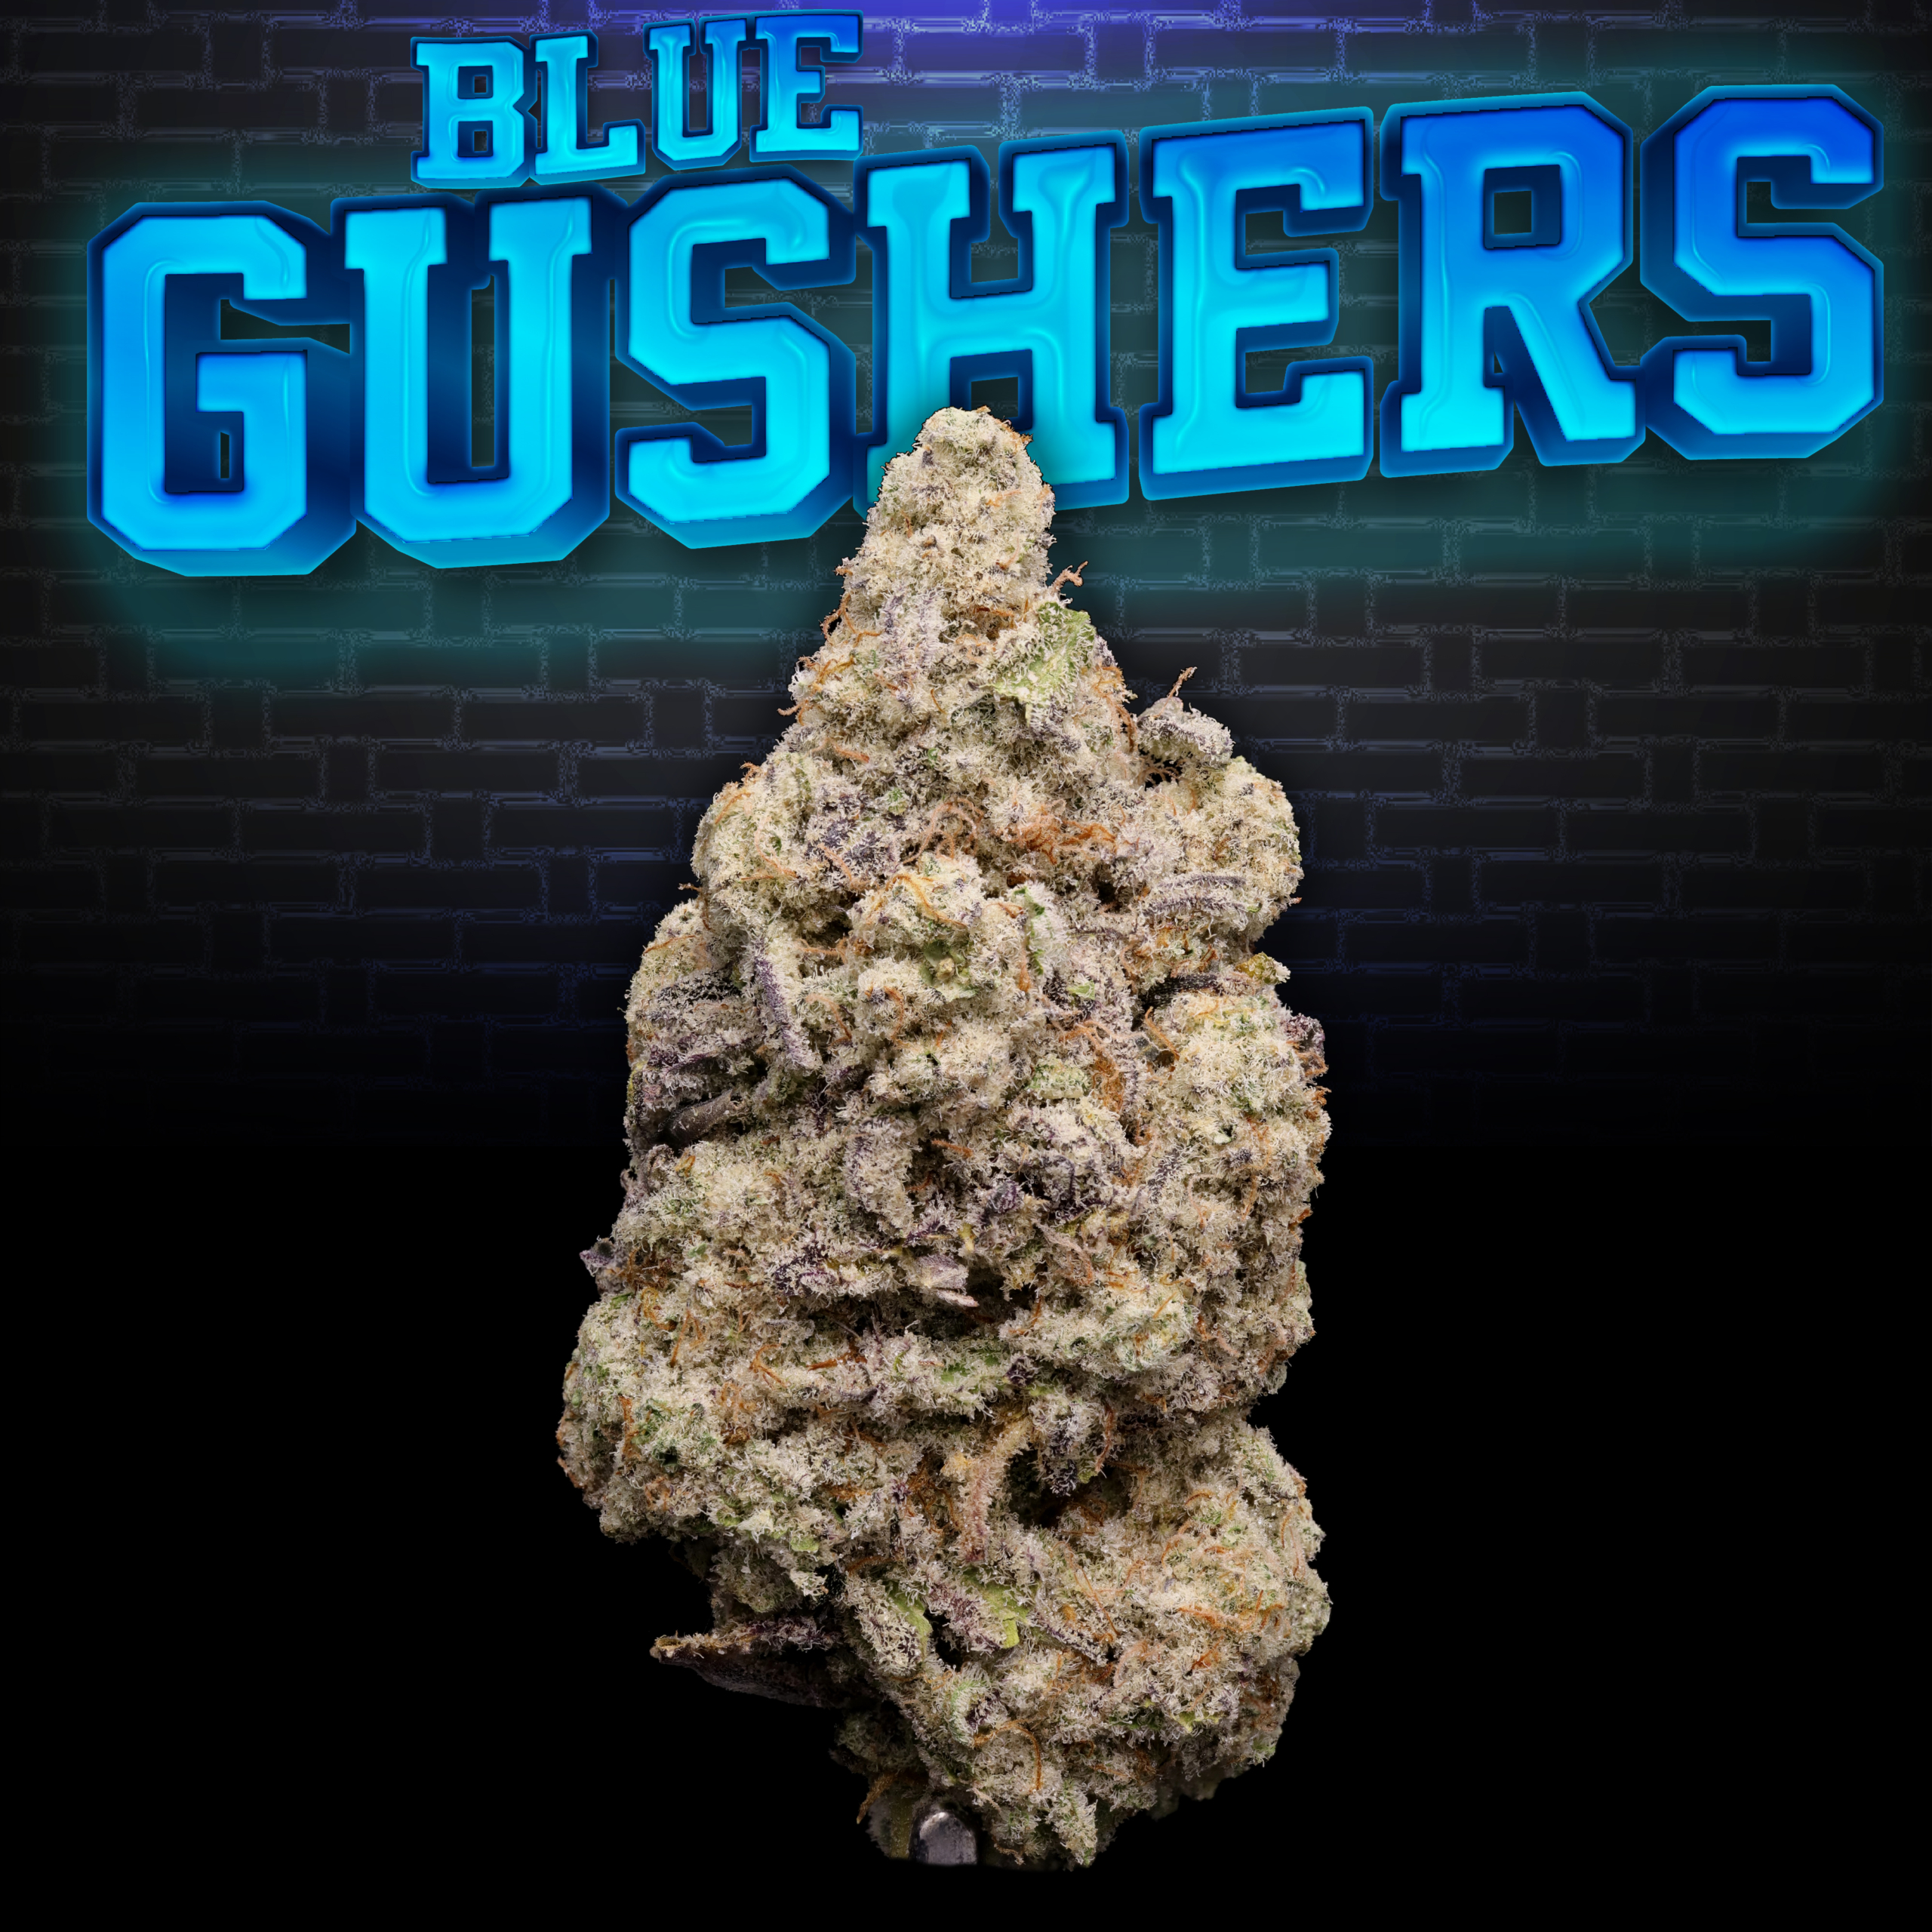 Blue Gushers Thumbnail